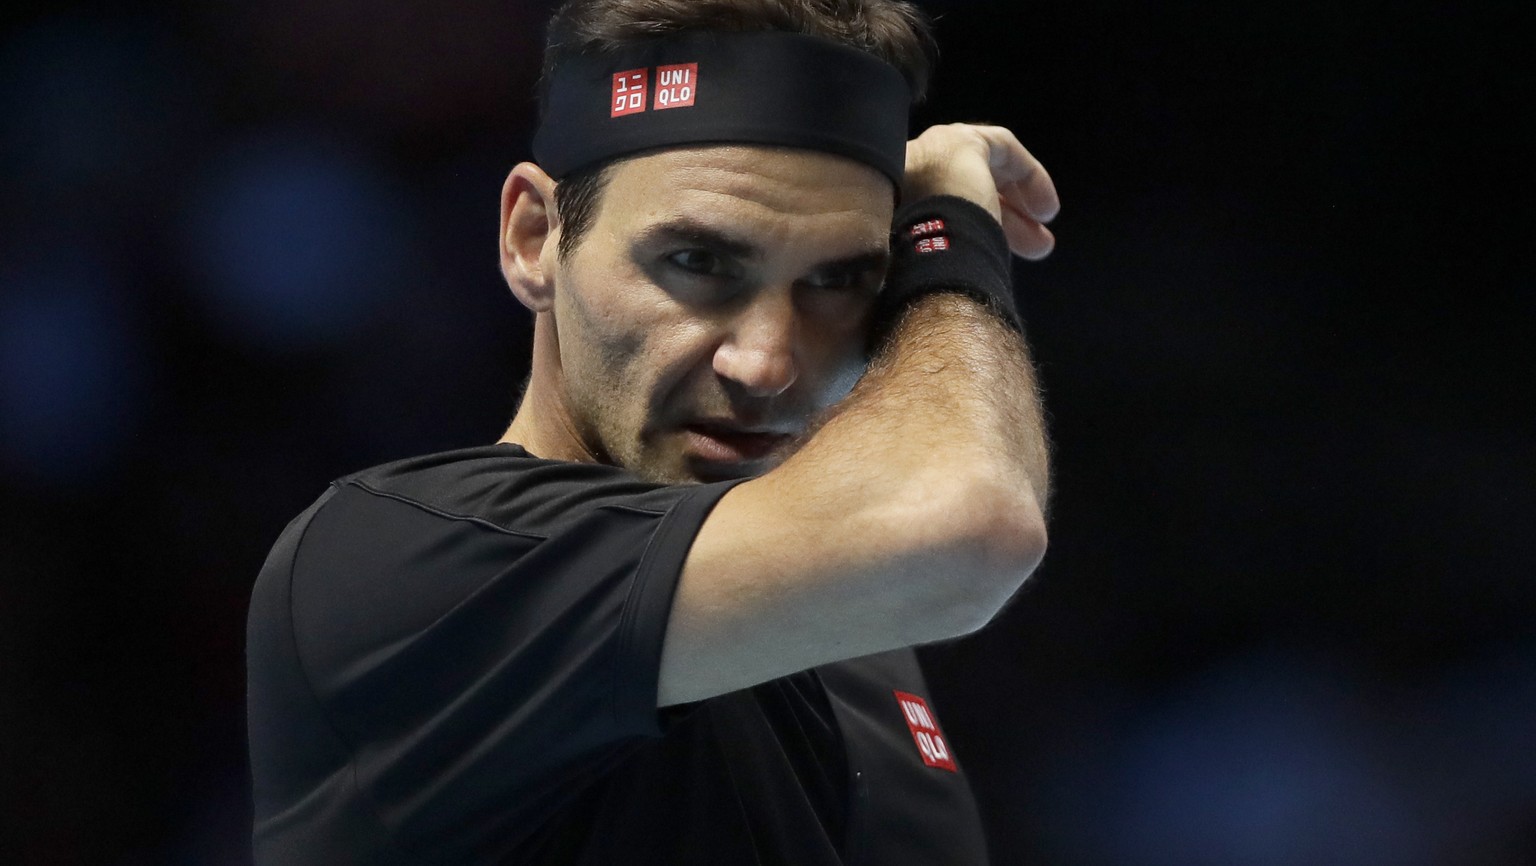 Schwache Vorhand und kein Glück bei Breakbällen – es lief nicht für Federer heute.